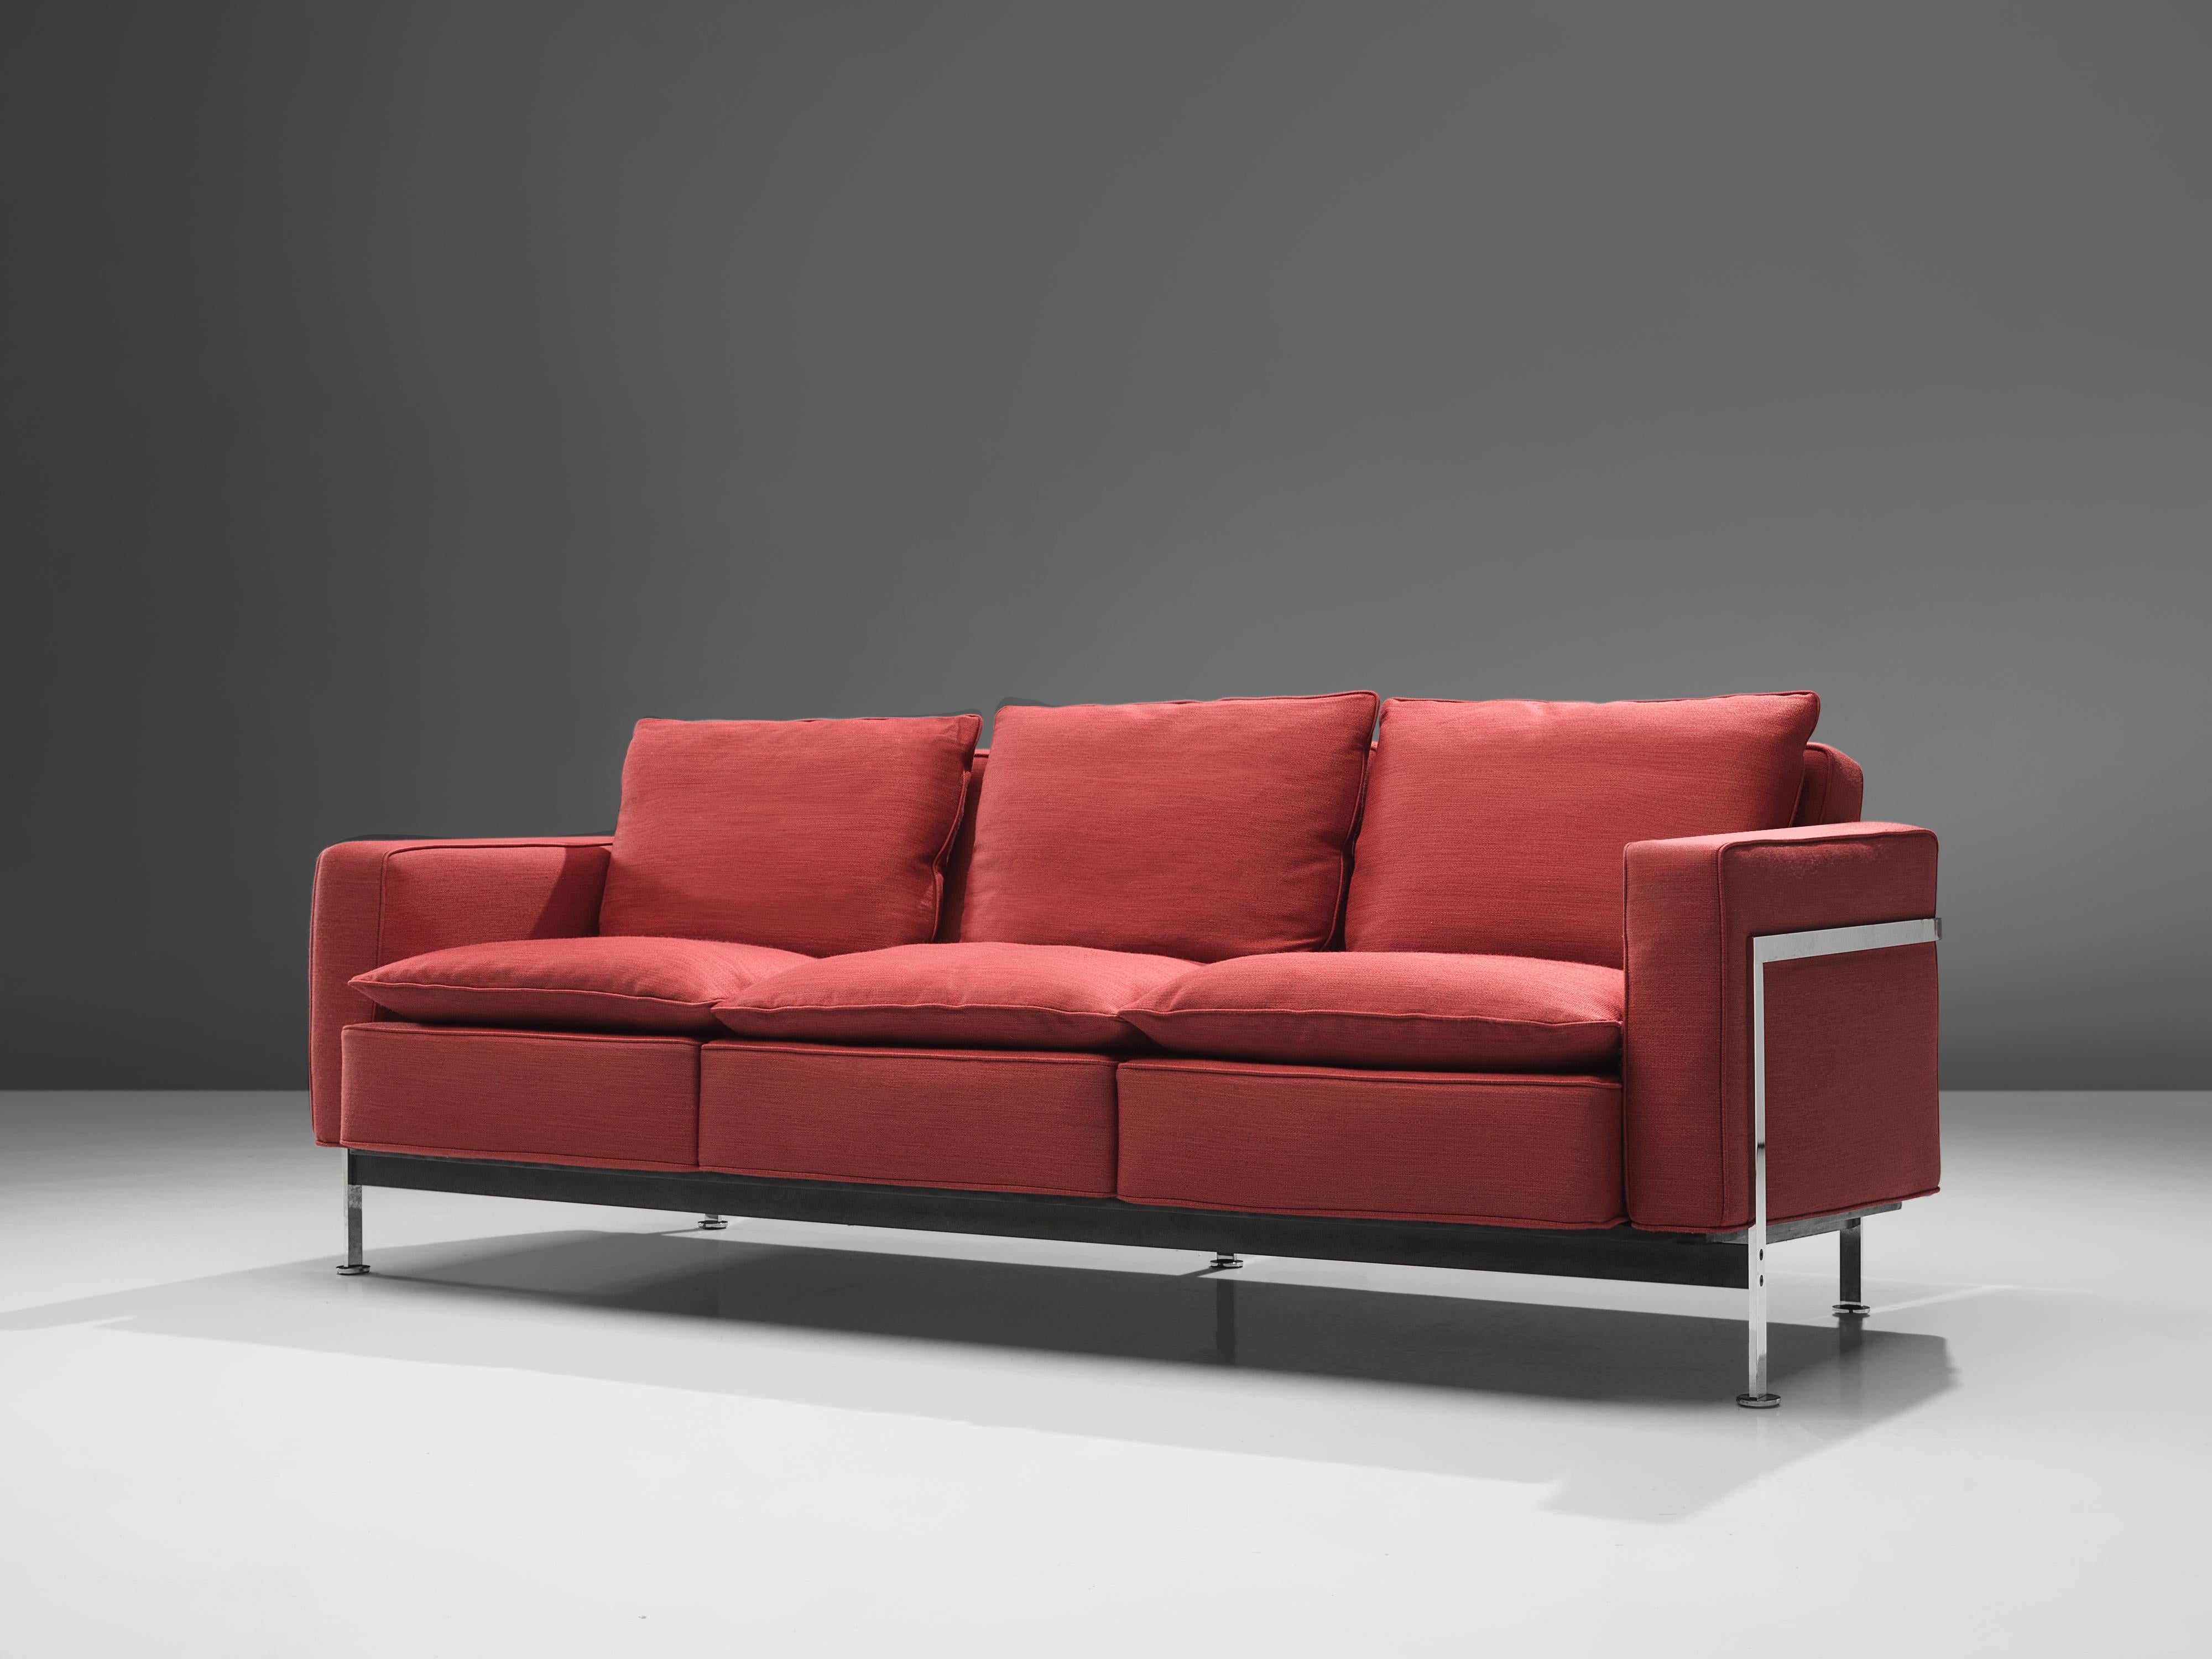 Robert Haussmann pour De Sede, canapé modèle RH-302, métal, revêtement rouge, Suisse, design 1954

Ce canapé confortable, conçu par Robert Haussmann pour De Sede, est doté d'un cadre chromé qui fait office de panier pour les coussins. Les épais